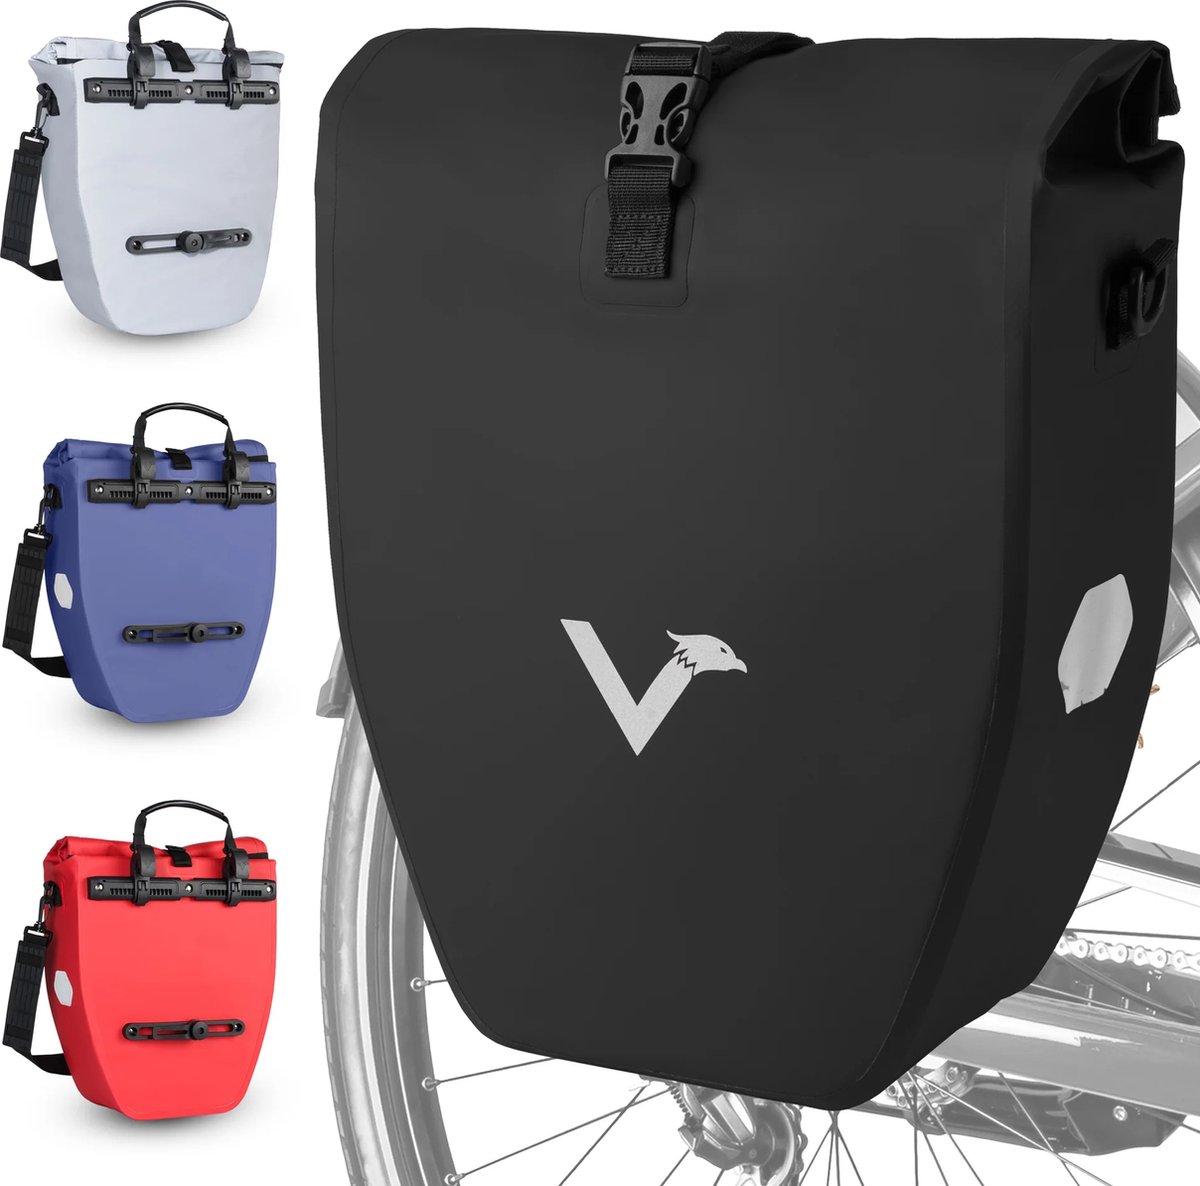 Grote en waterdichte bagagedragertas - ValkBasic - Zwart - 20L capaciteit - Fietstas voor bagagedrager met reflectoren in zwart